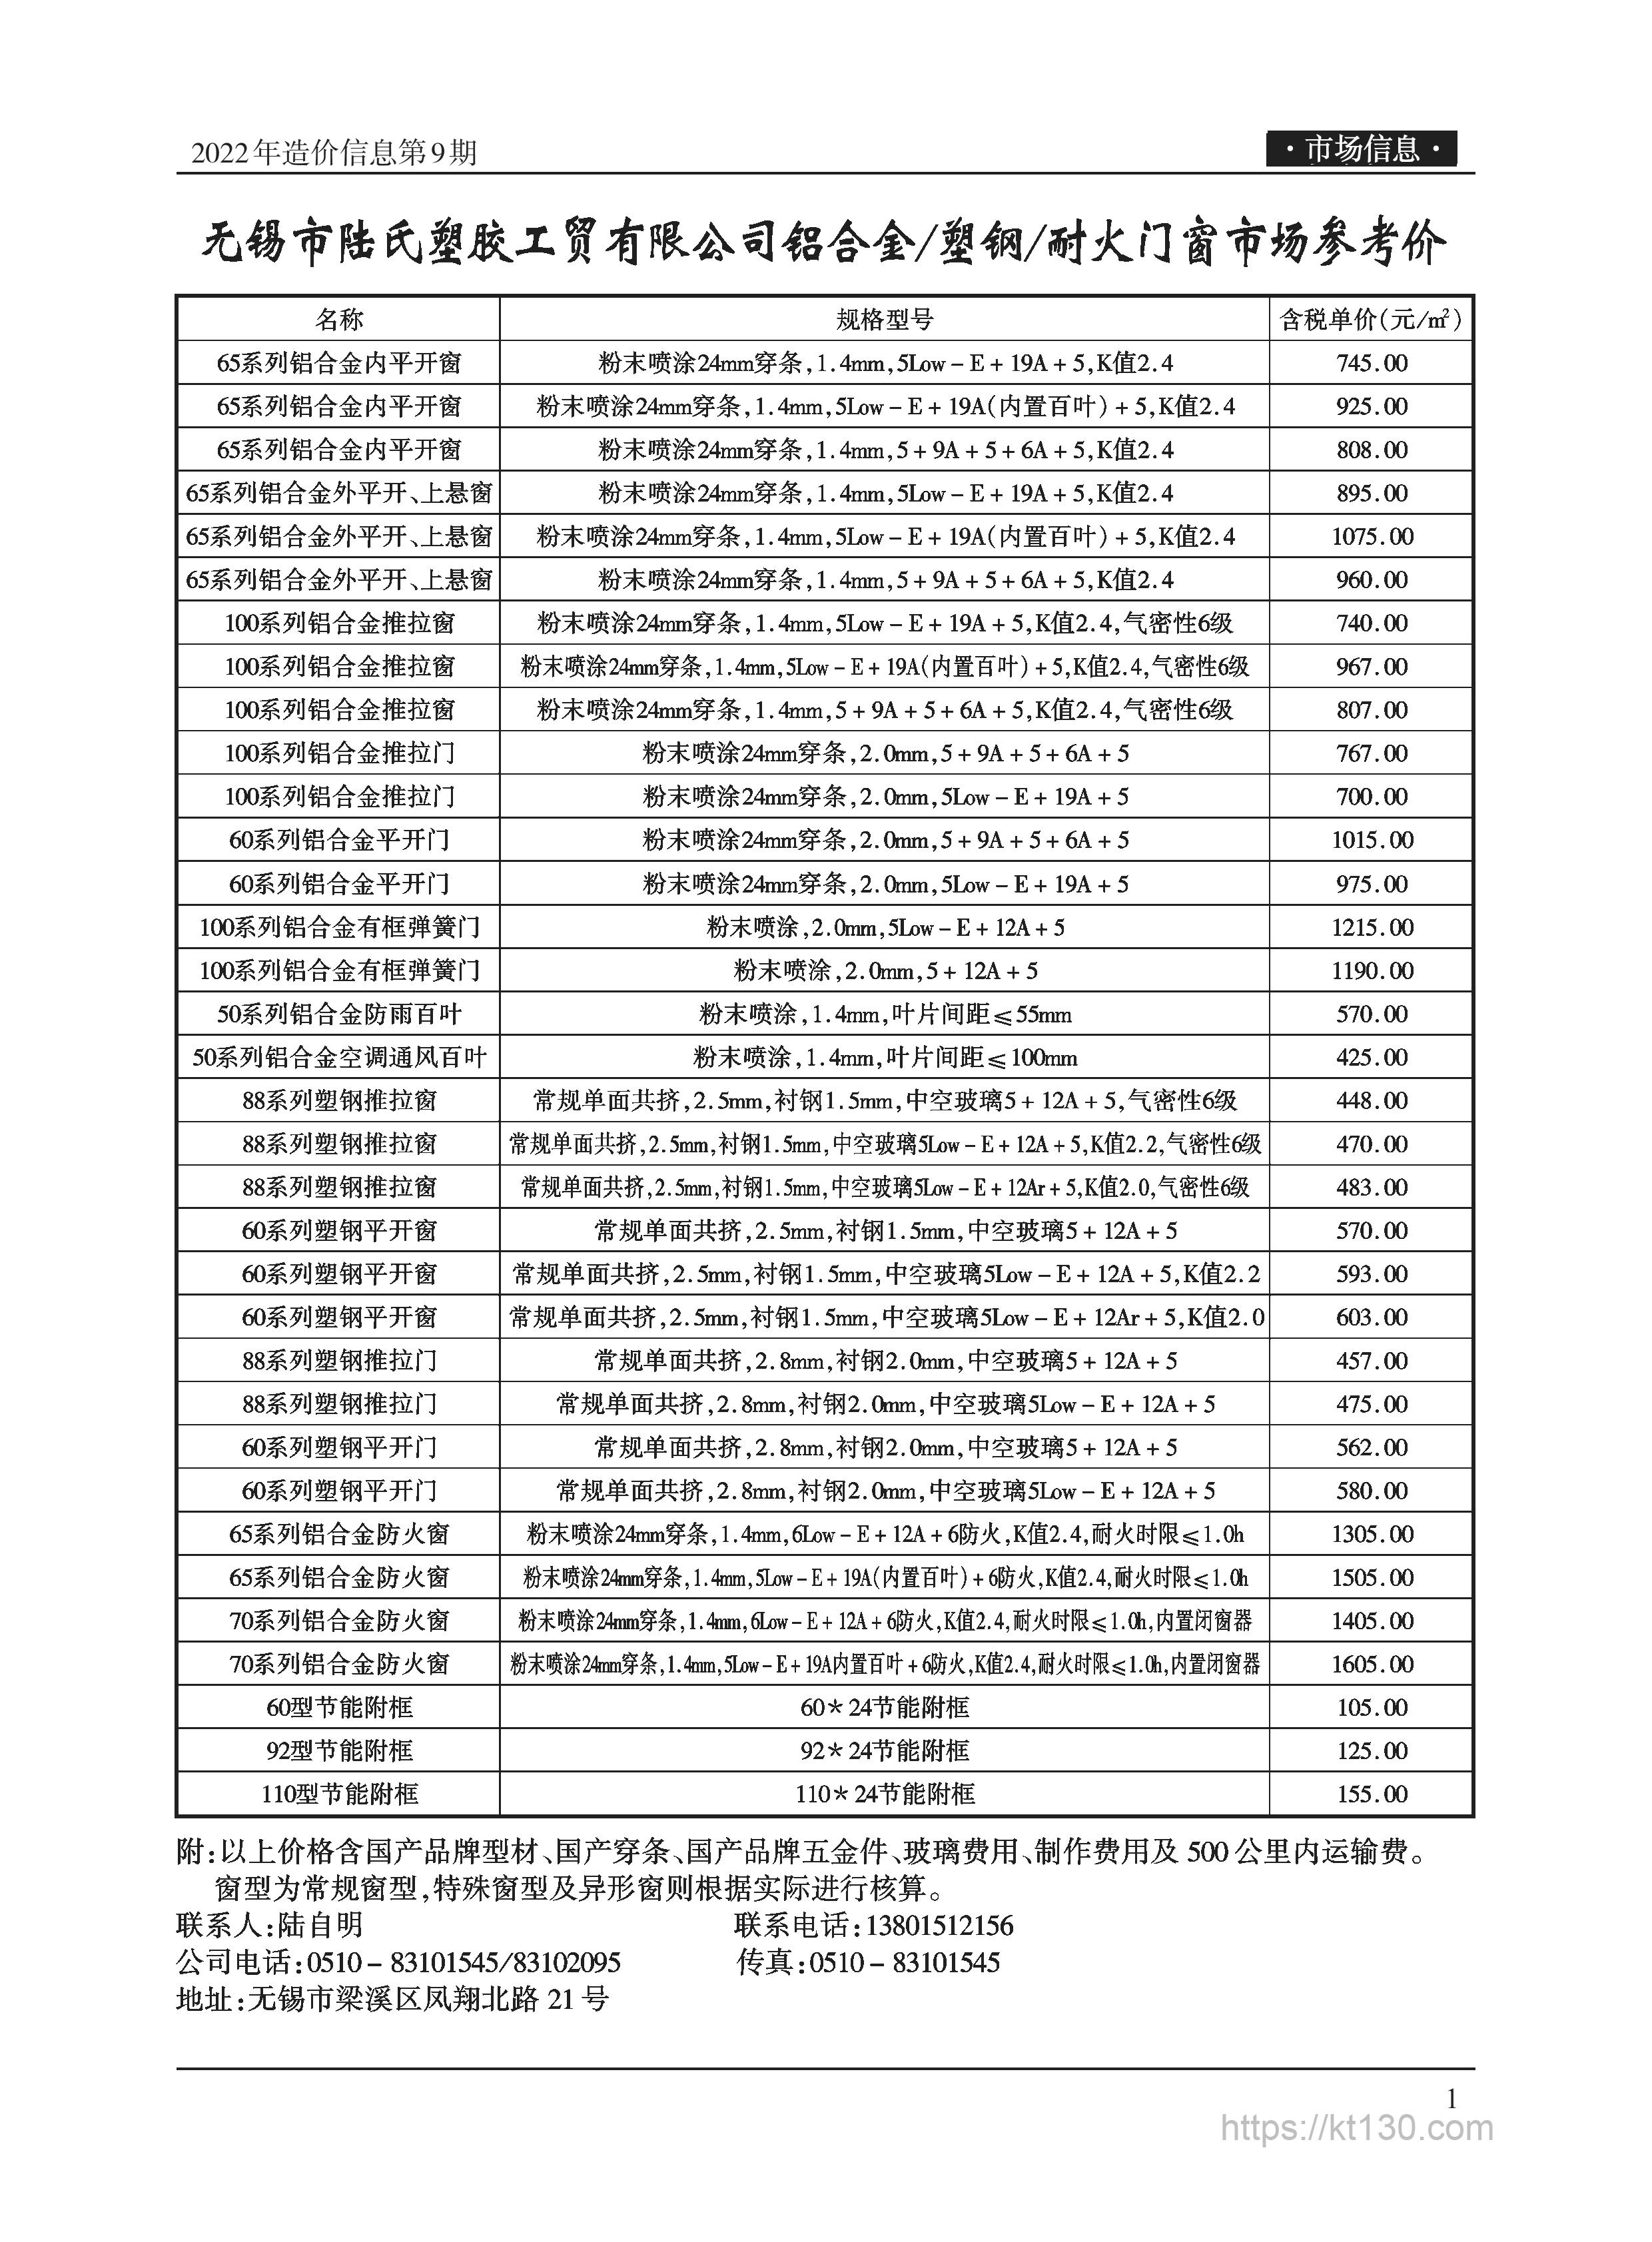 江苏省无锡市2022年9月份装饰板材价目表